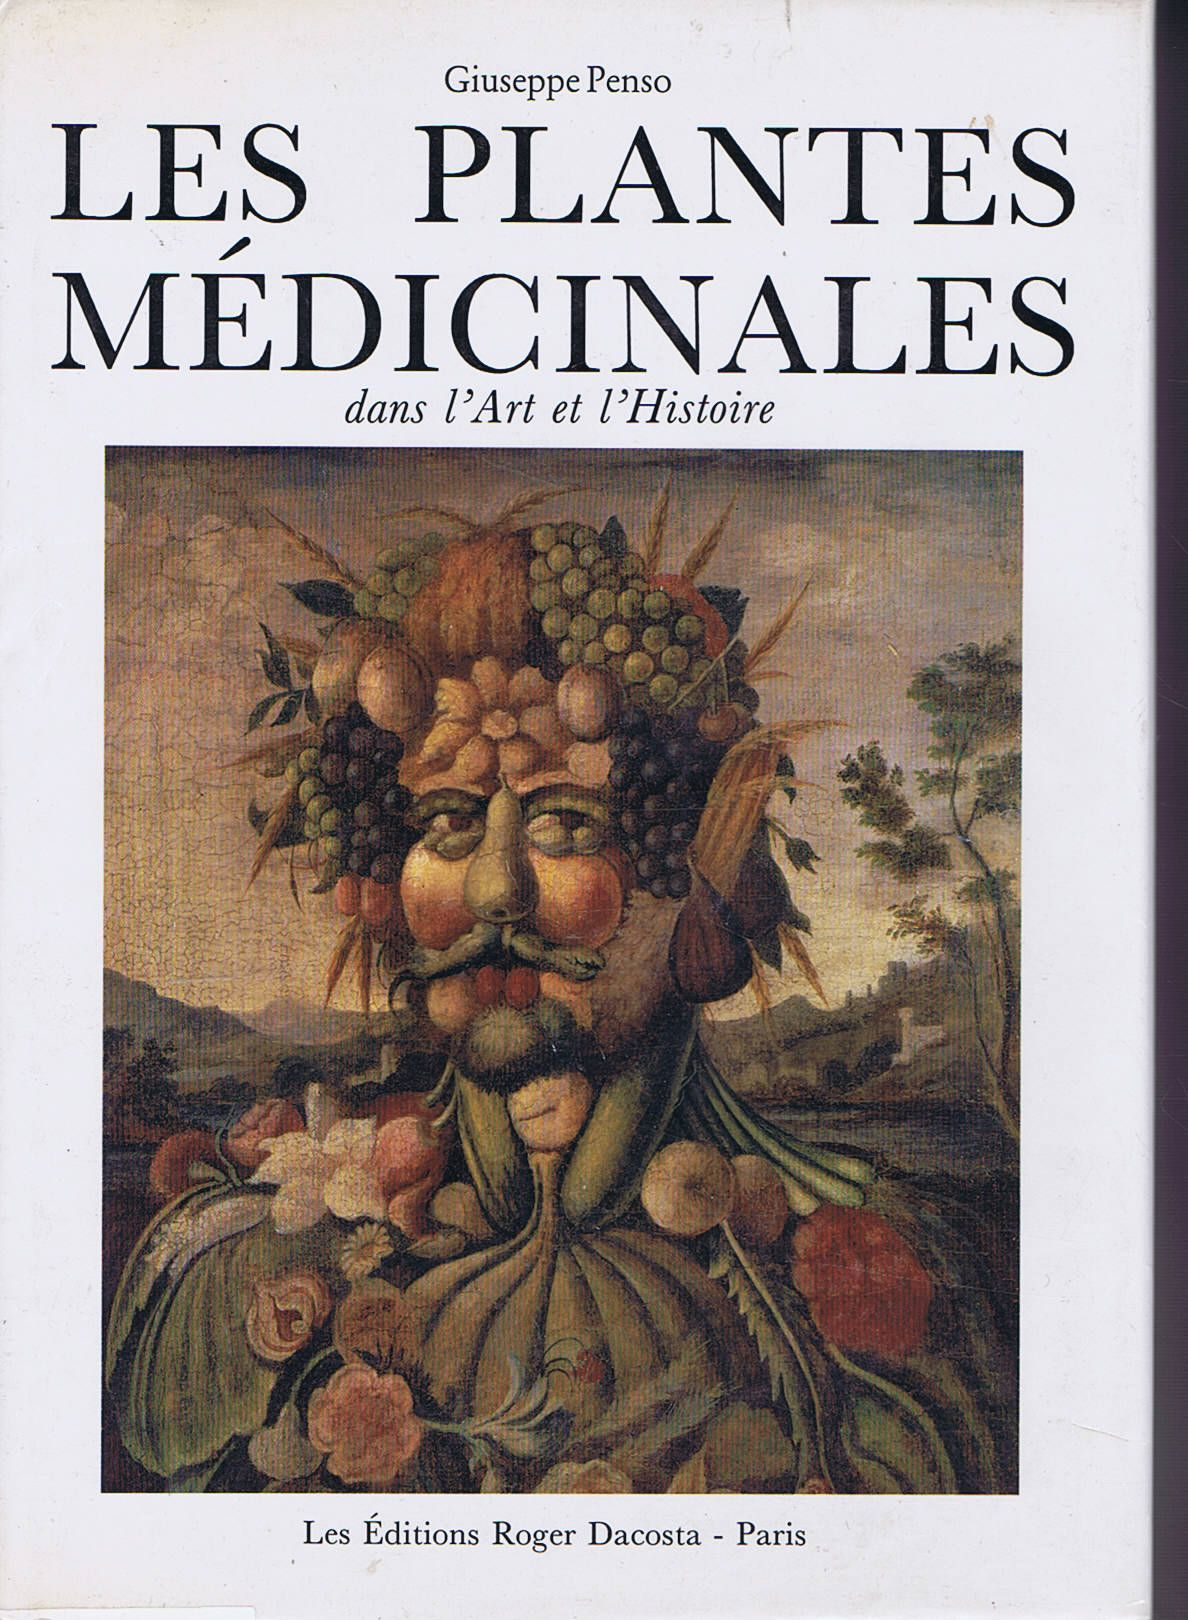 Les Plantes médicinales dans l'art et l'histoire